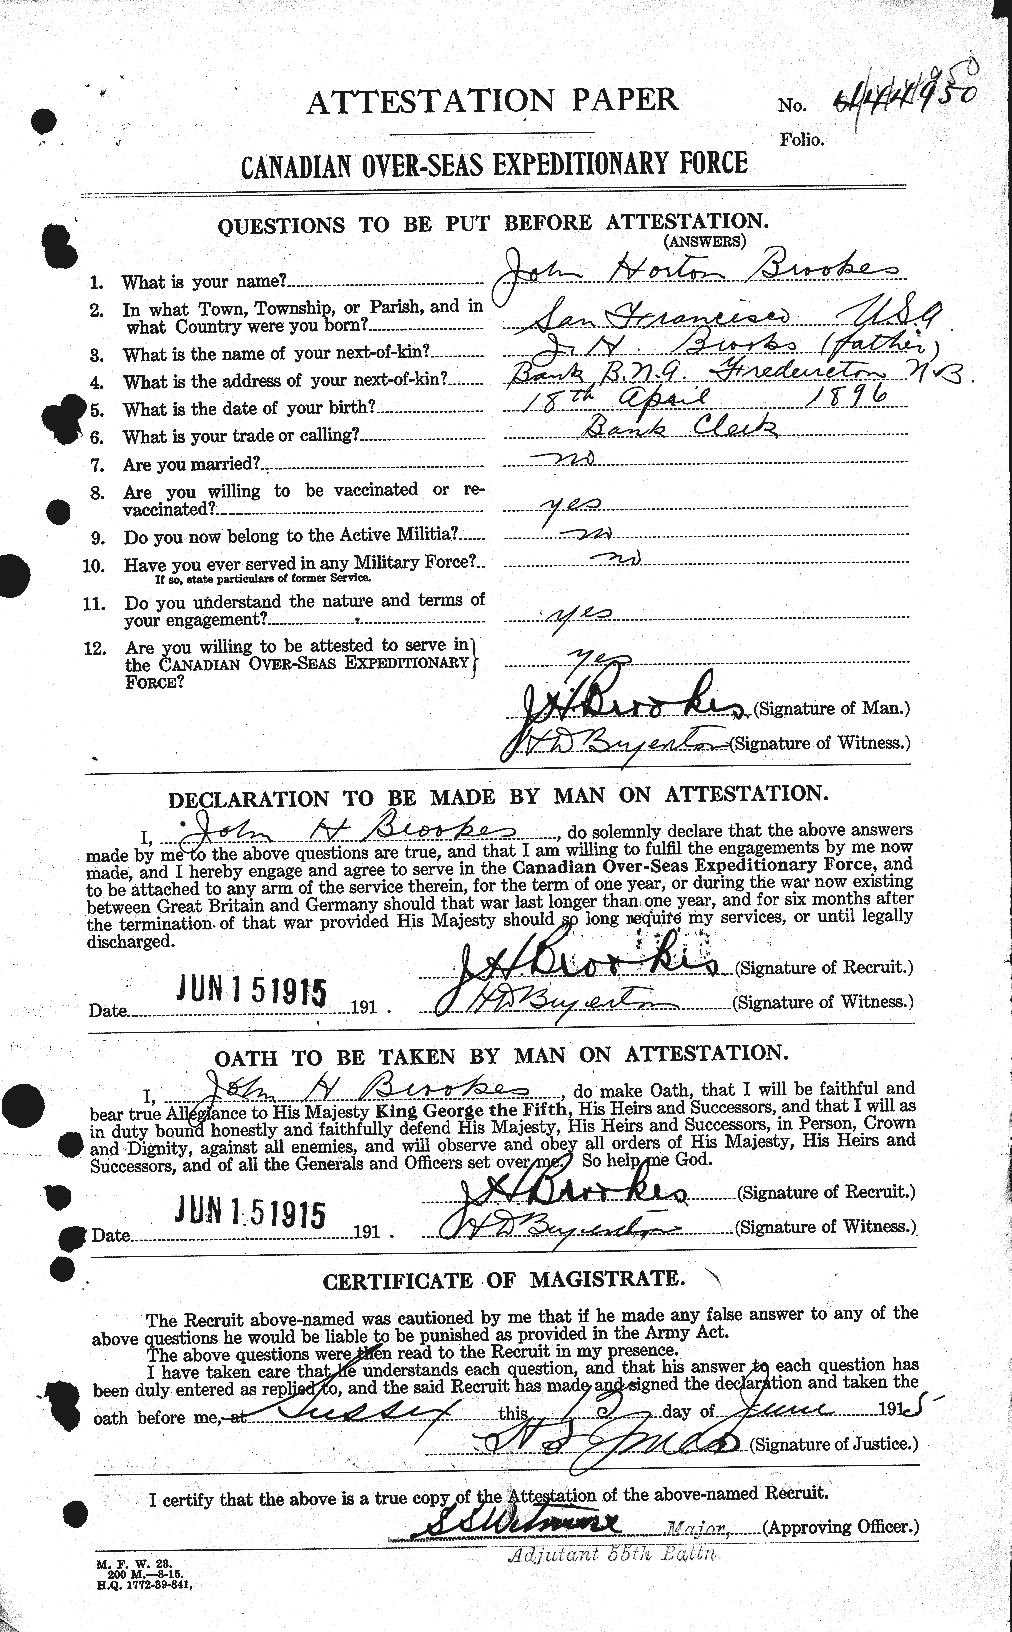 Dossiers du Personnel de la Première Guerre mondiale - CEC 261385a